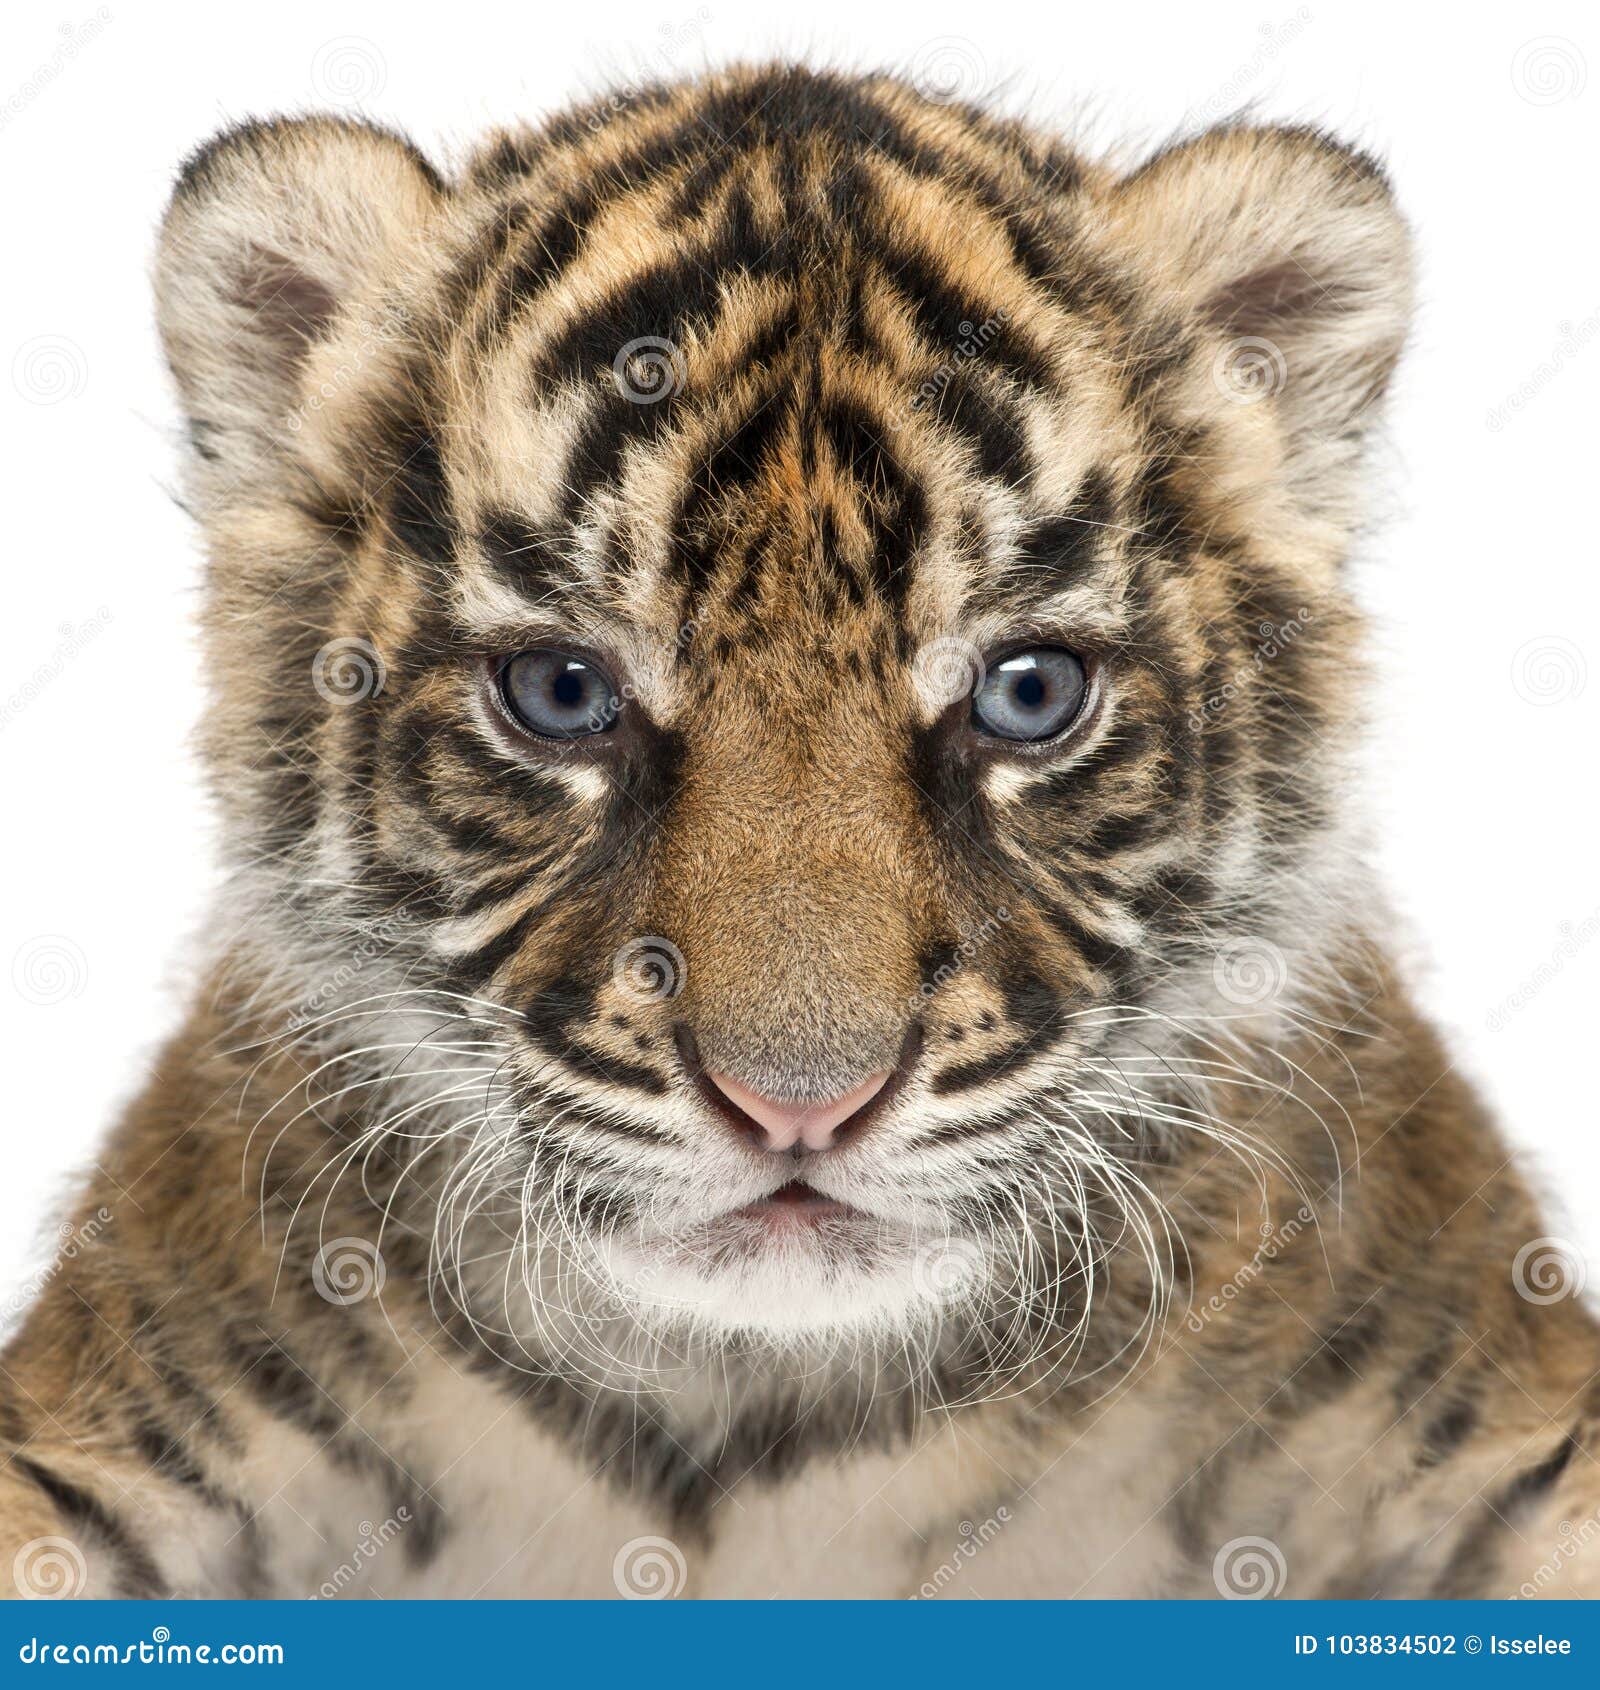 sumatran tiger cub, panthera tigris sumatrae, 3 weeks old, in fr